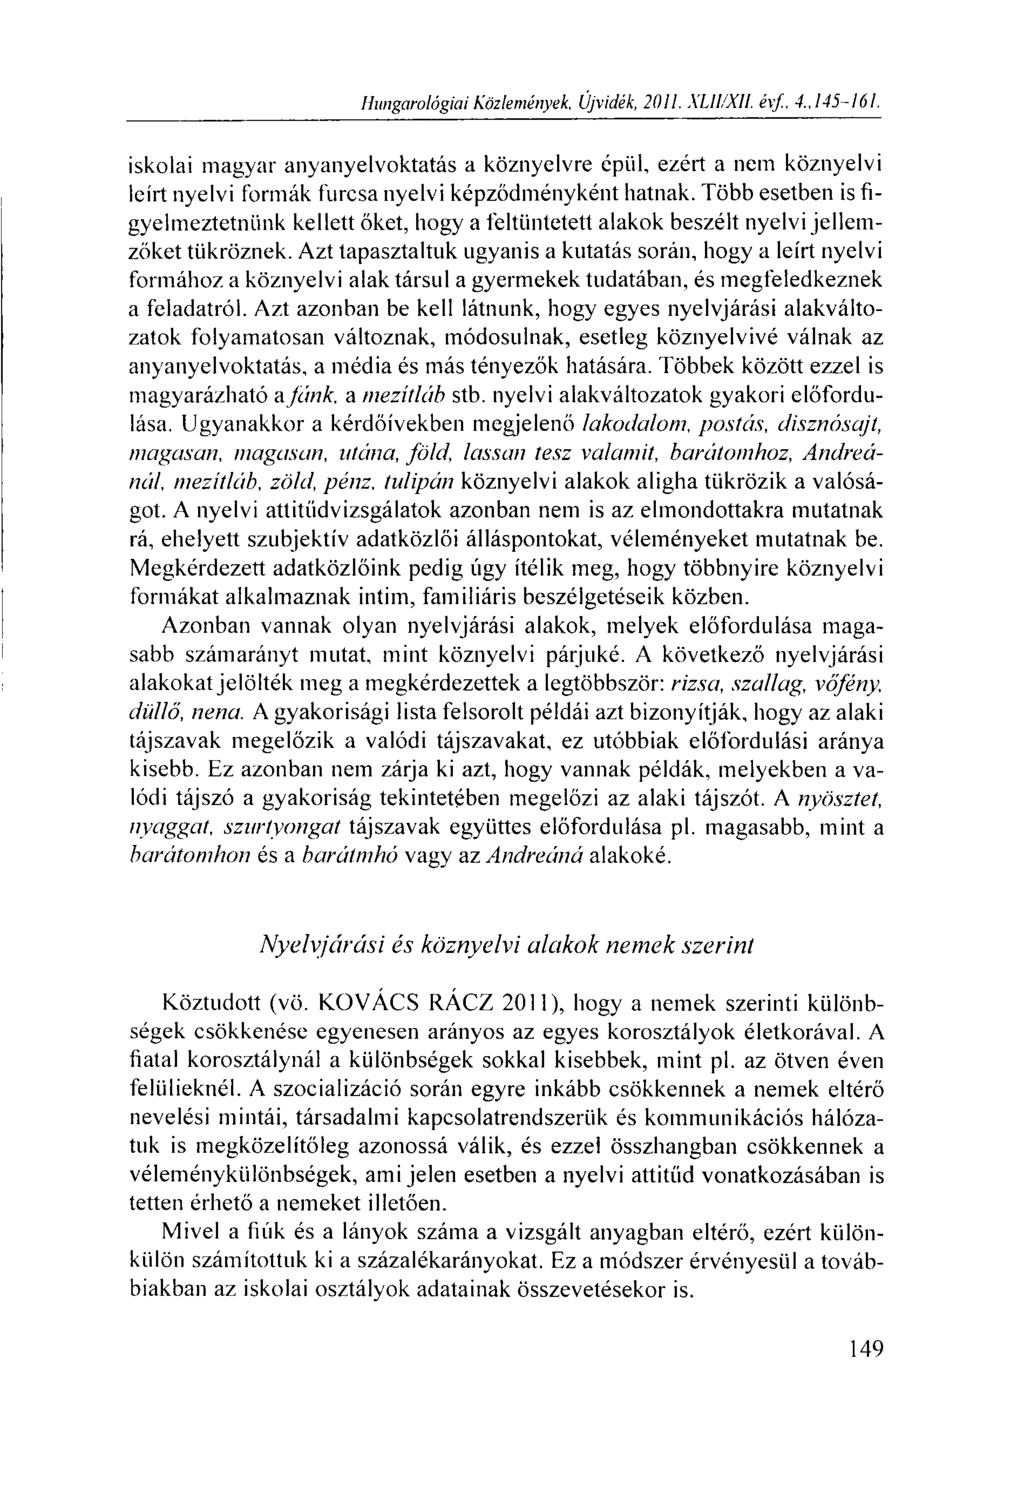 Hungarológiai Közlemények, Újvidék, 2011. XLII/XII. évf., 4., 145-161. iskolai magyar anyanyelvoktatás a köznyelvre épül, ezért a nem köznyelvi leírt nyelvi formák furcsa nyelvi képződményként hatnak.